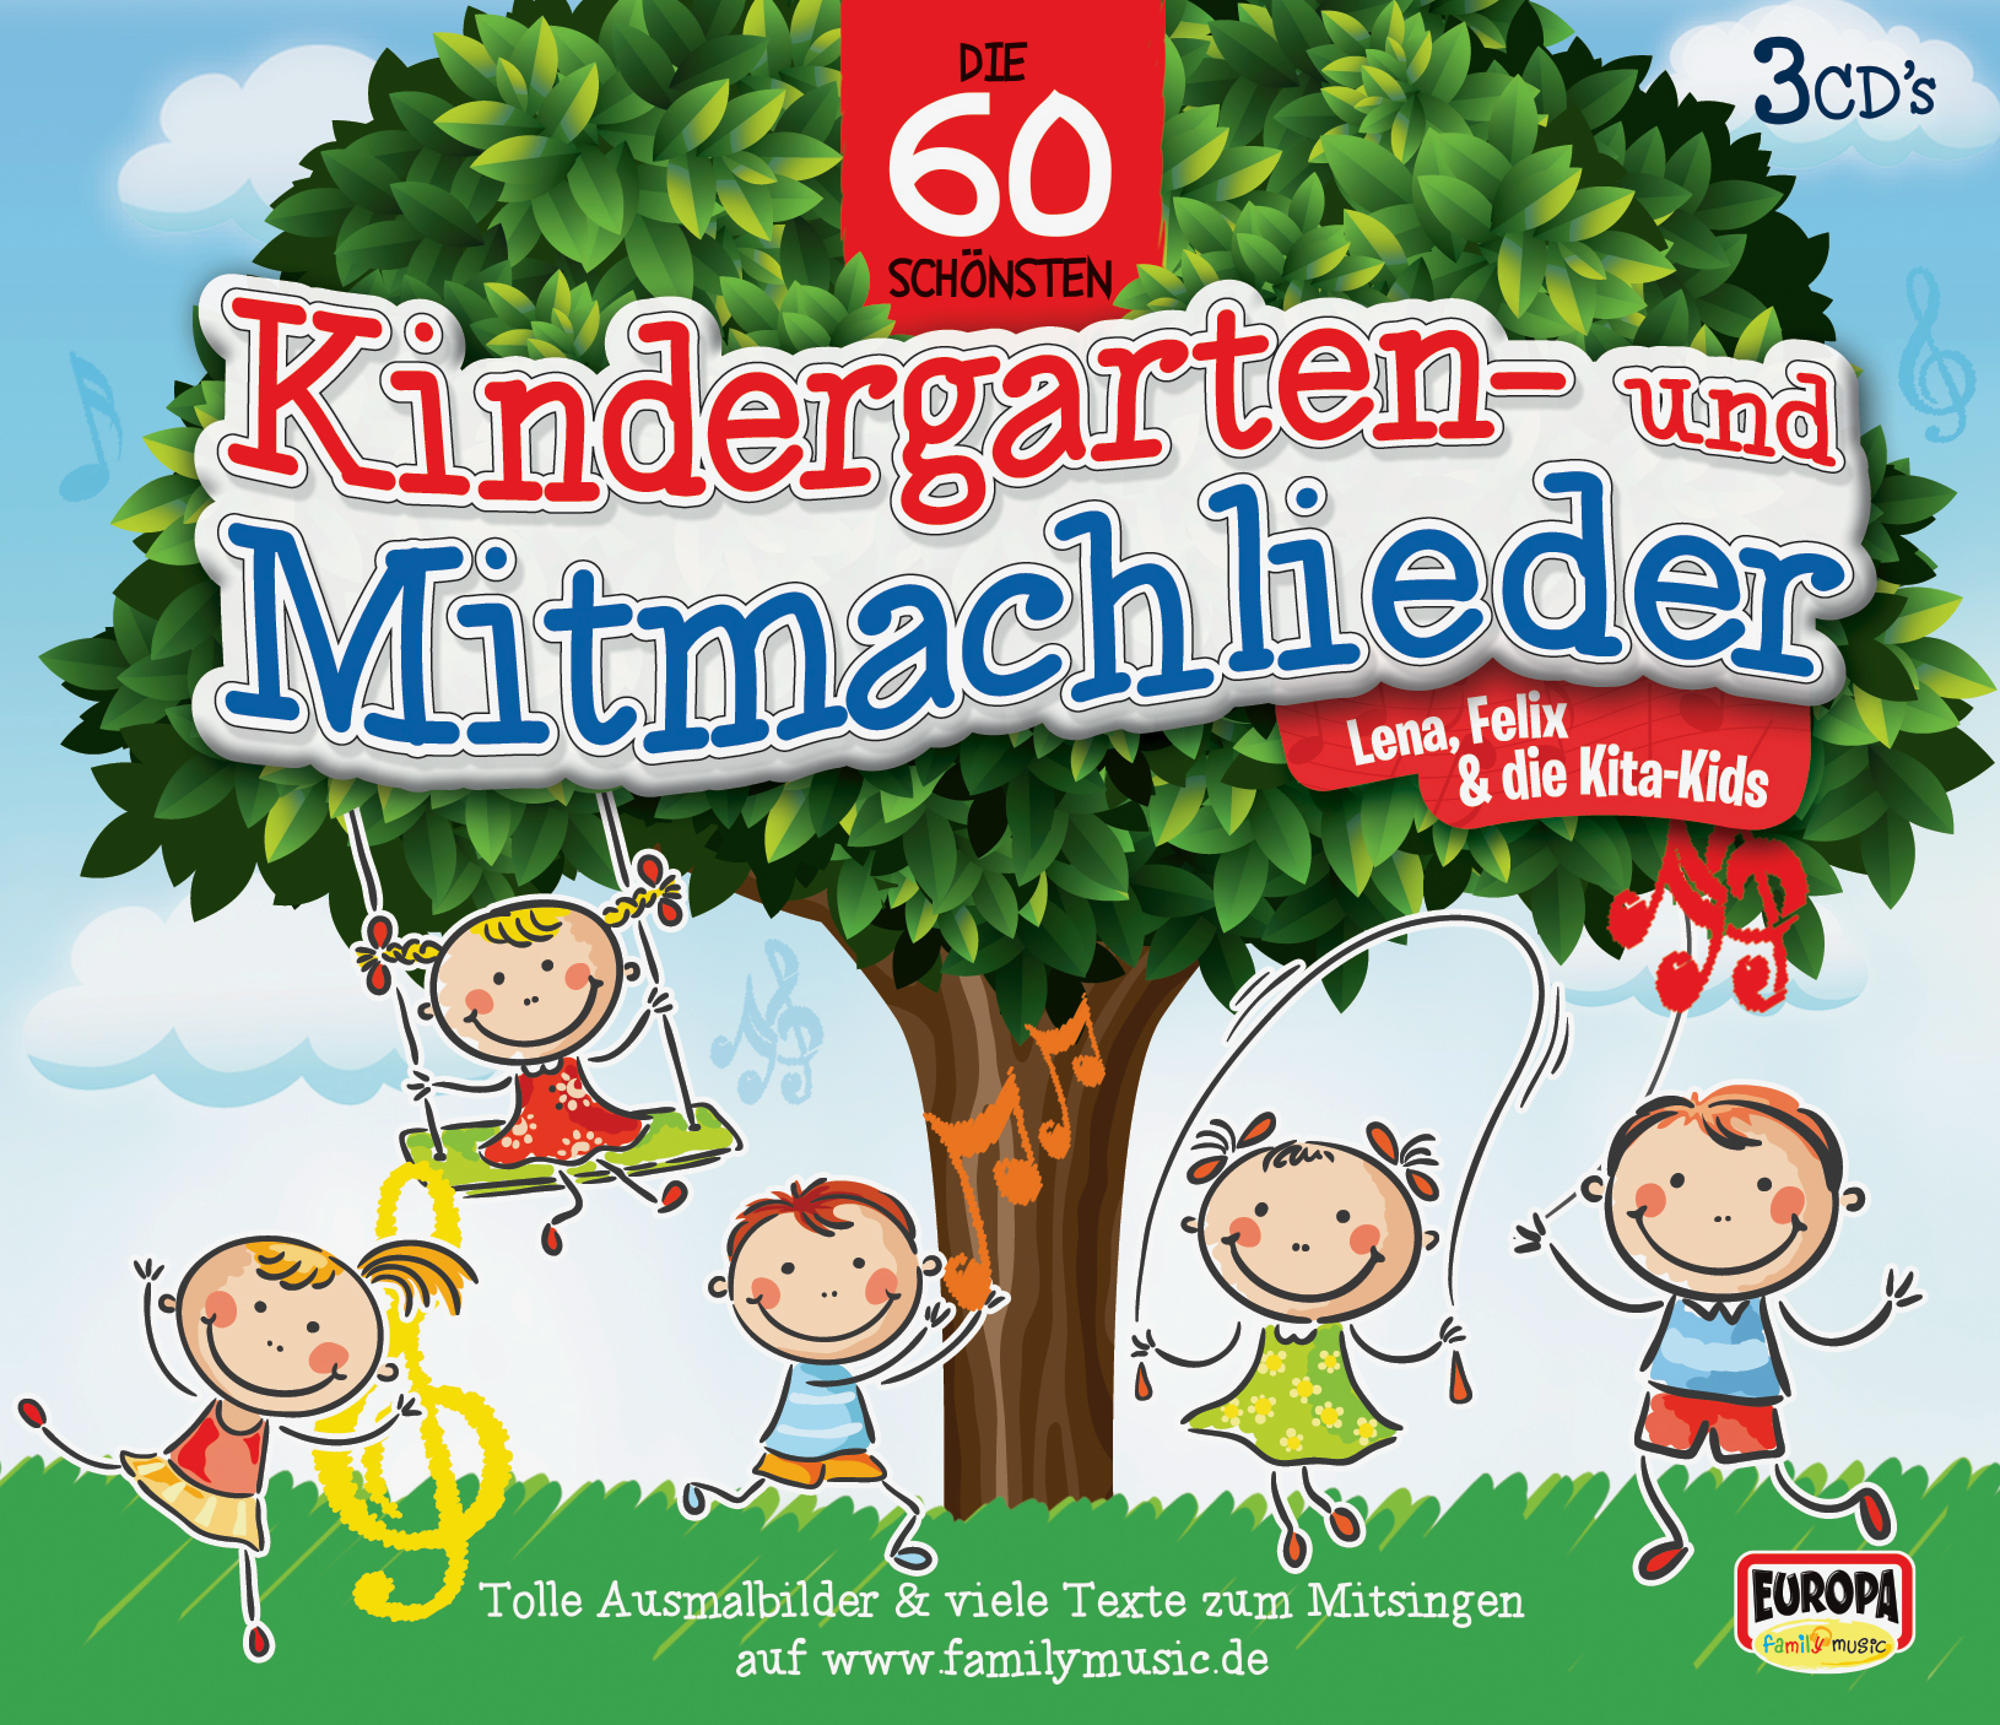 Felix & Die Kita-kids Lena (CD) Die 60 - - Bewegungslieder Kindergarten-Und Schönsten